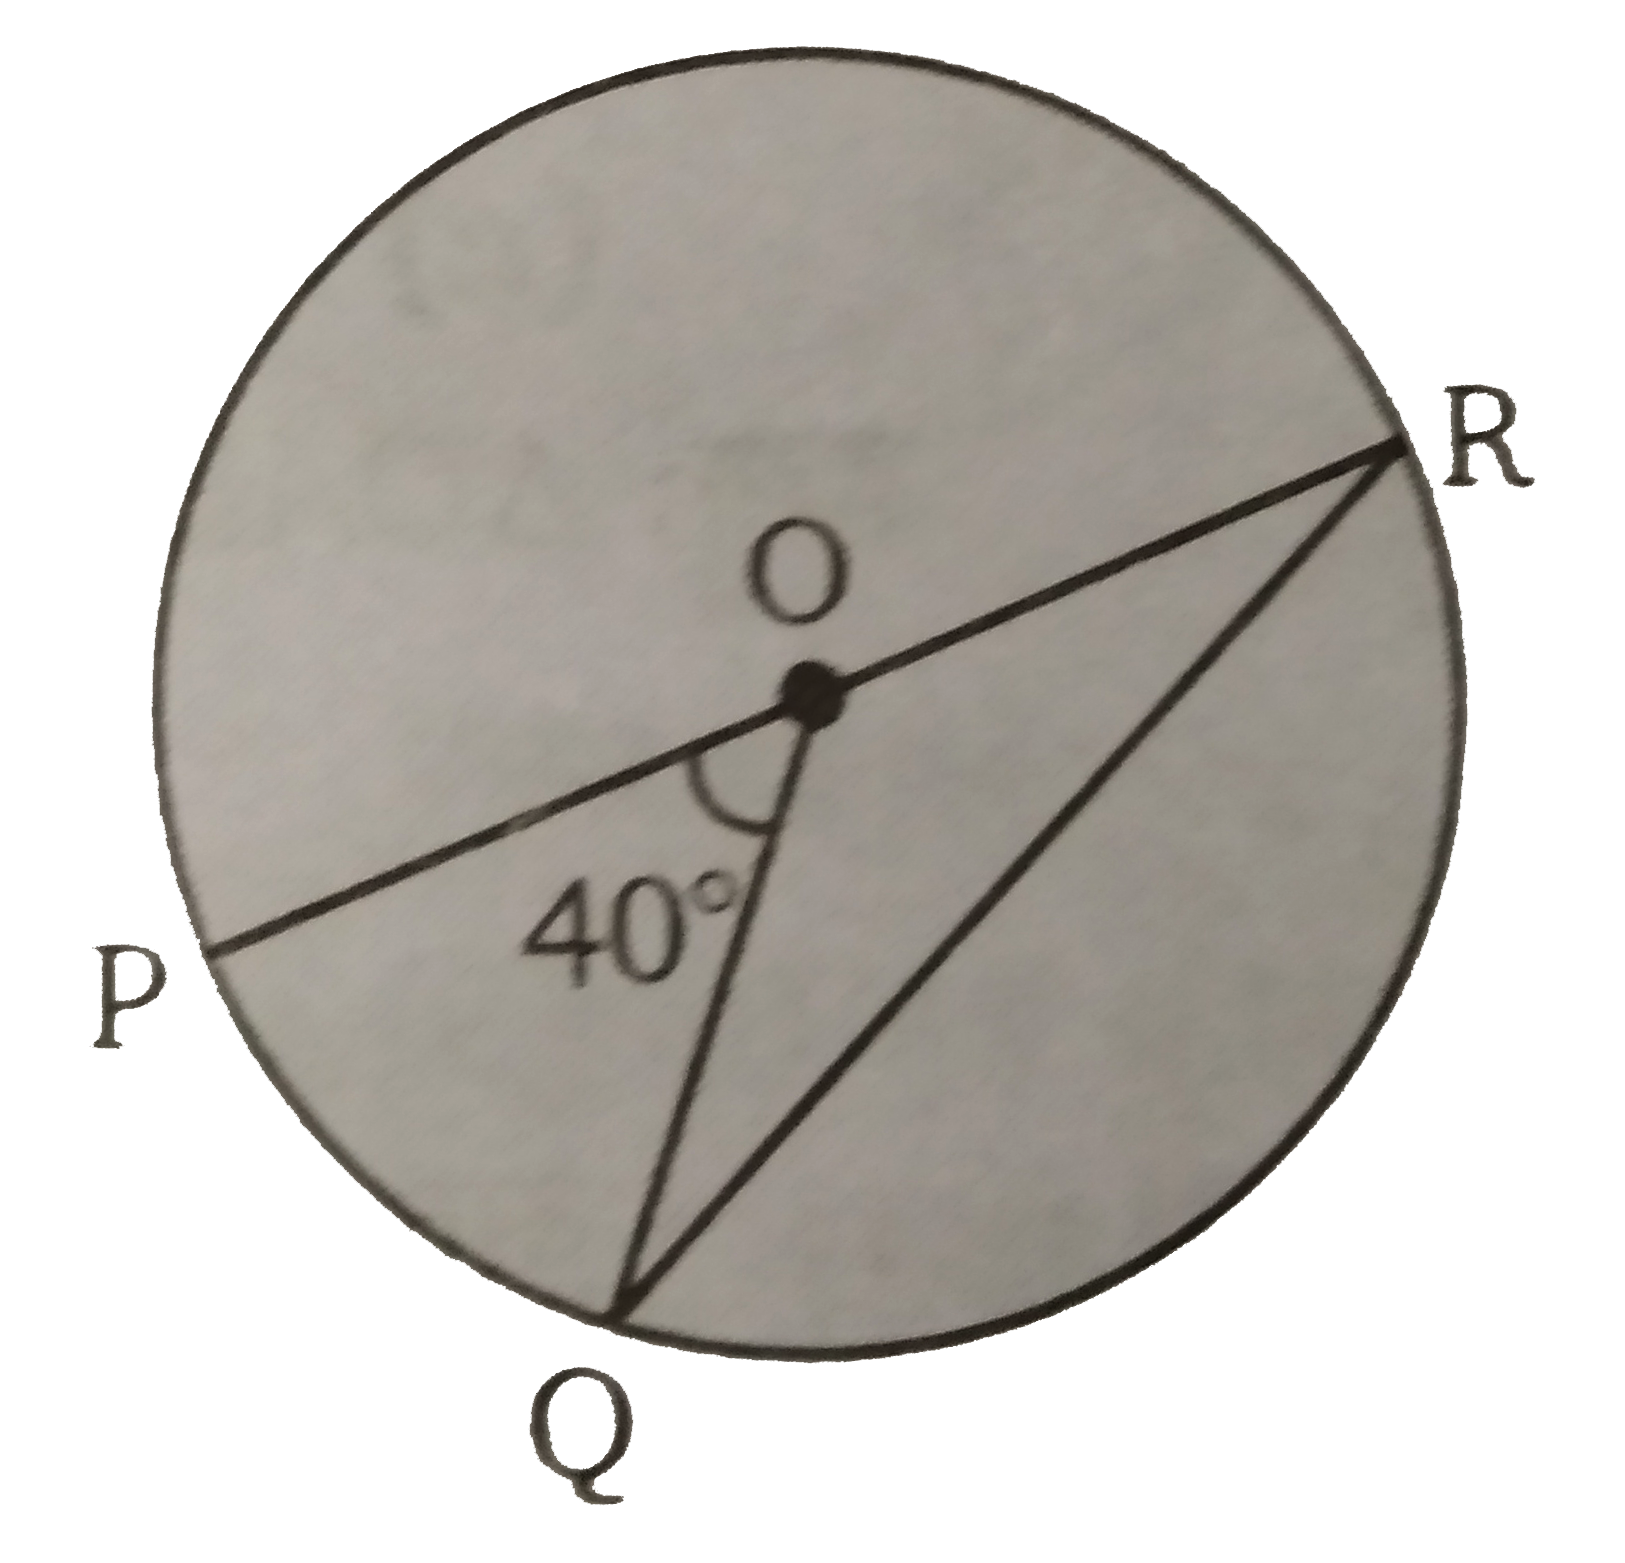 वृत्त का केंद्र O तथा व्यास PR है। Q परिधि पर कोई दूसरा बिंदु है। तब angle ORQ =